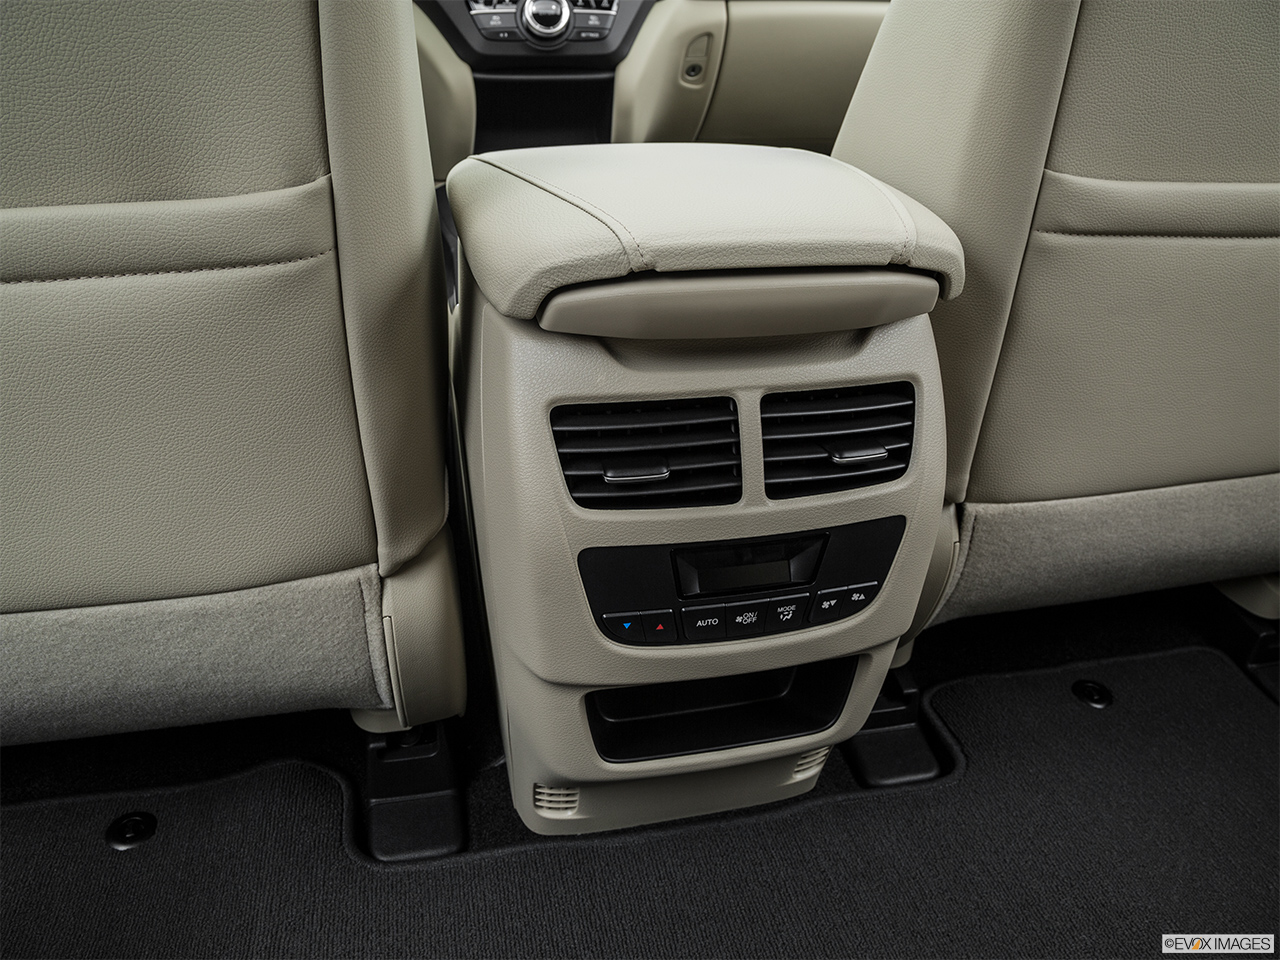 2016 Acura MDX SH-AWD Rear A/C controls. 